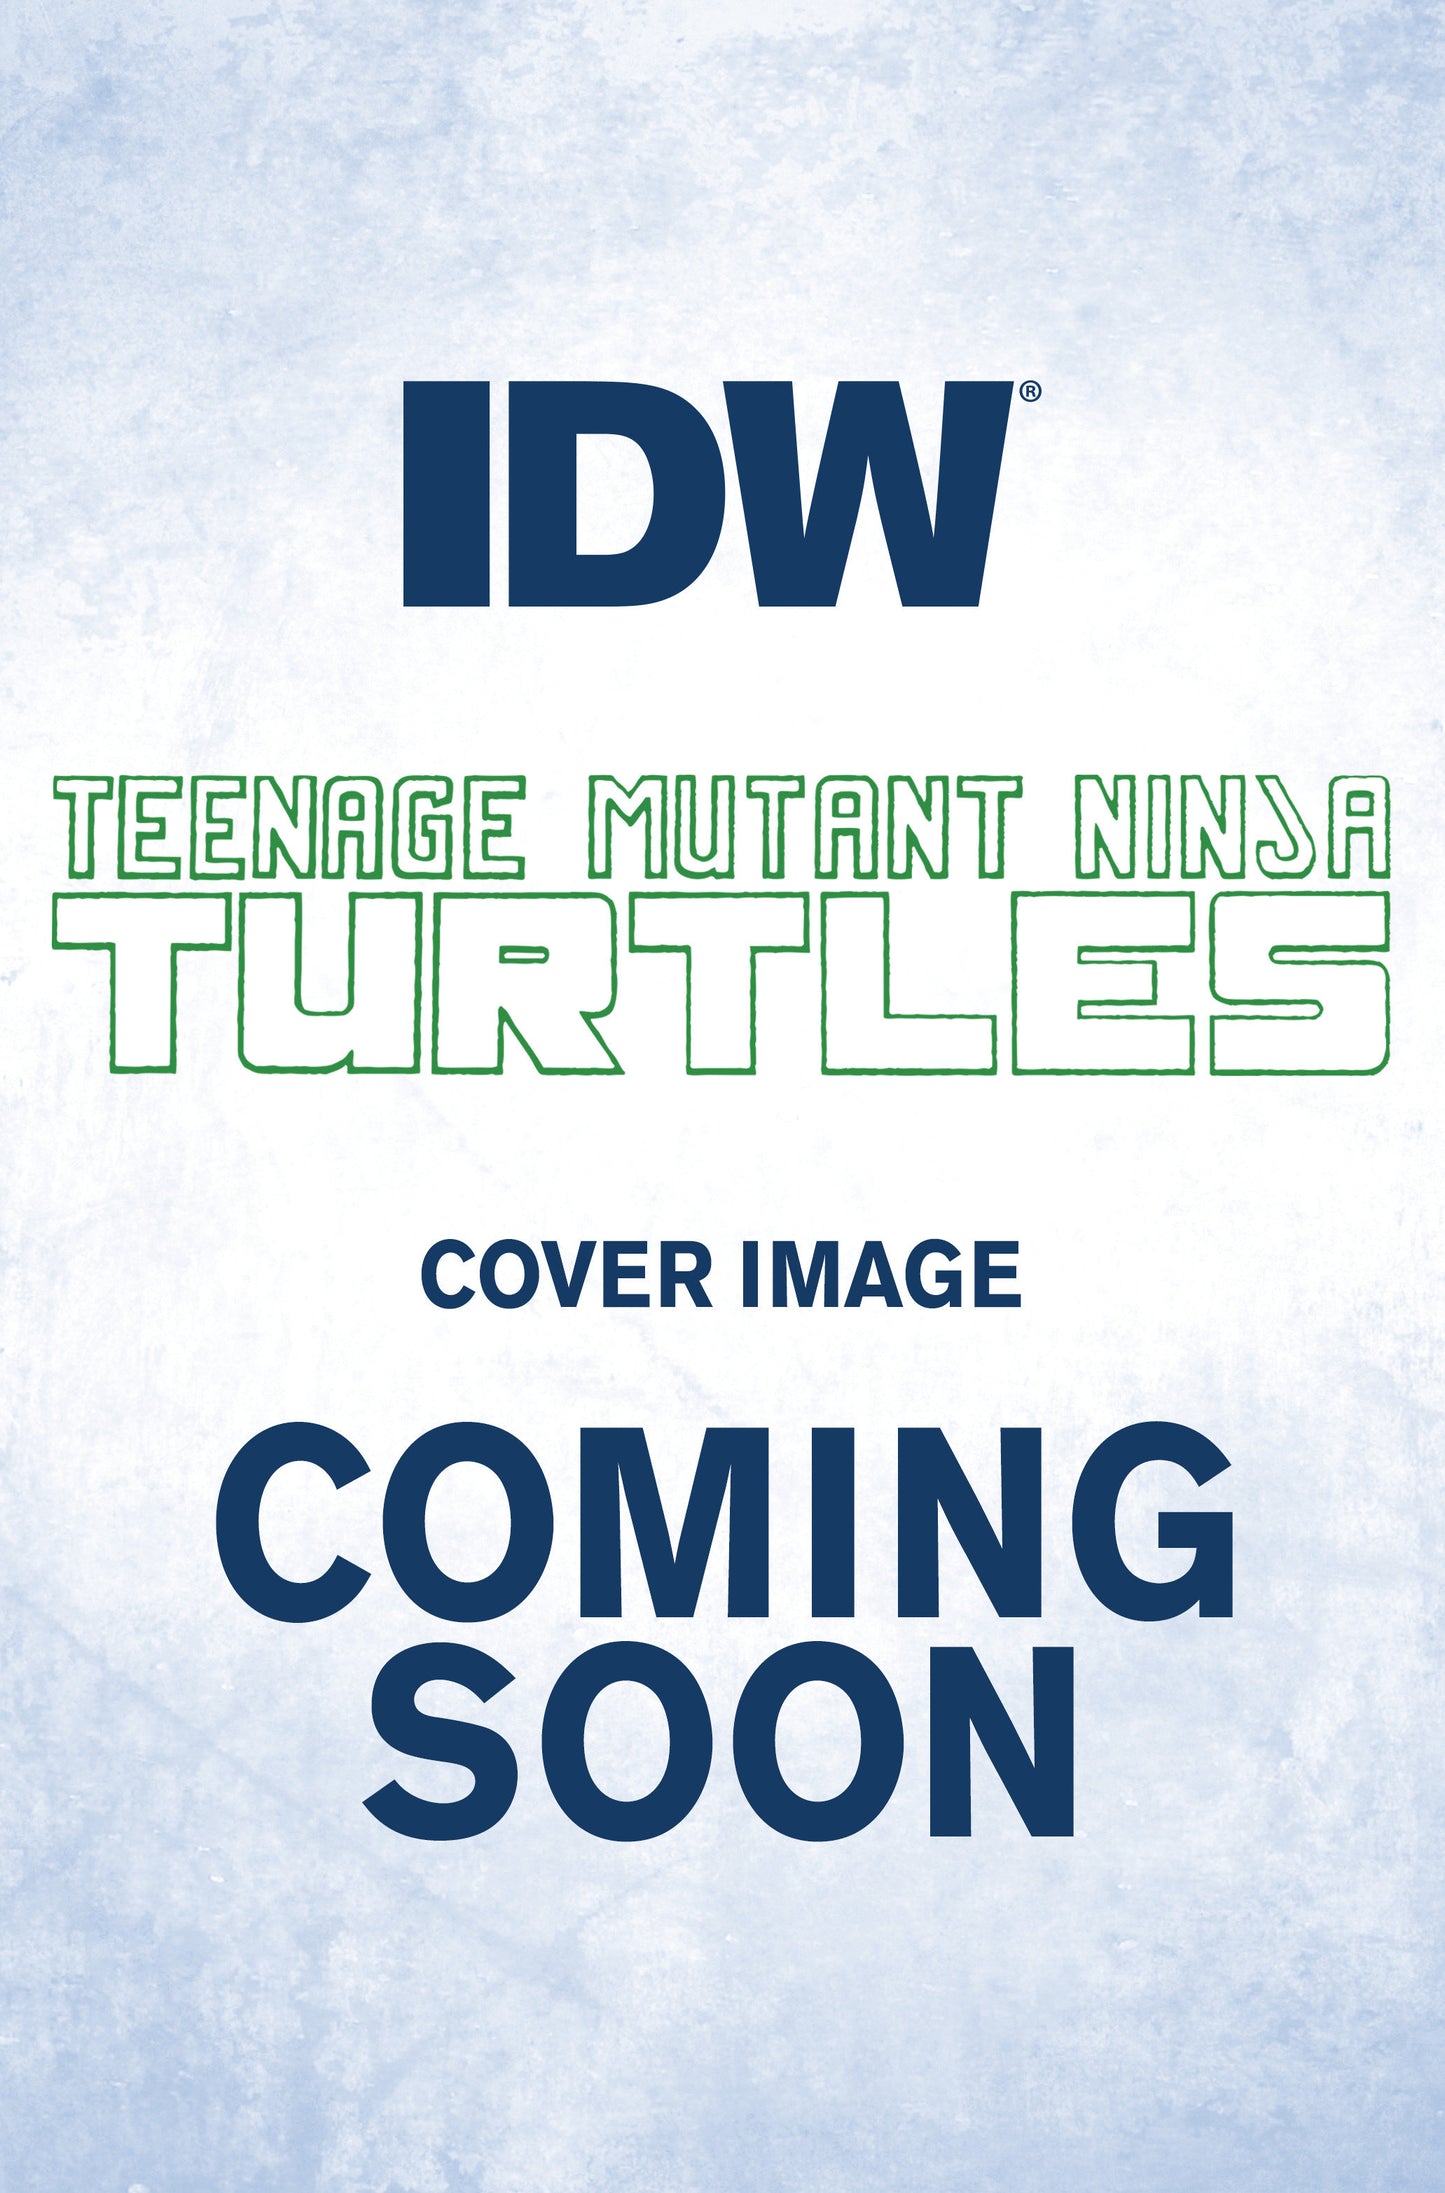 Teenage Mutant Ninja Turtles #137 Variant B (Eastman & Campbell)